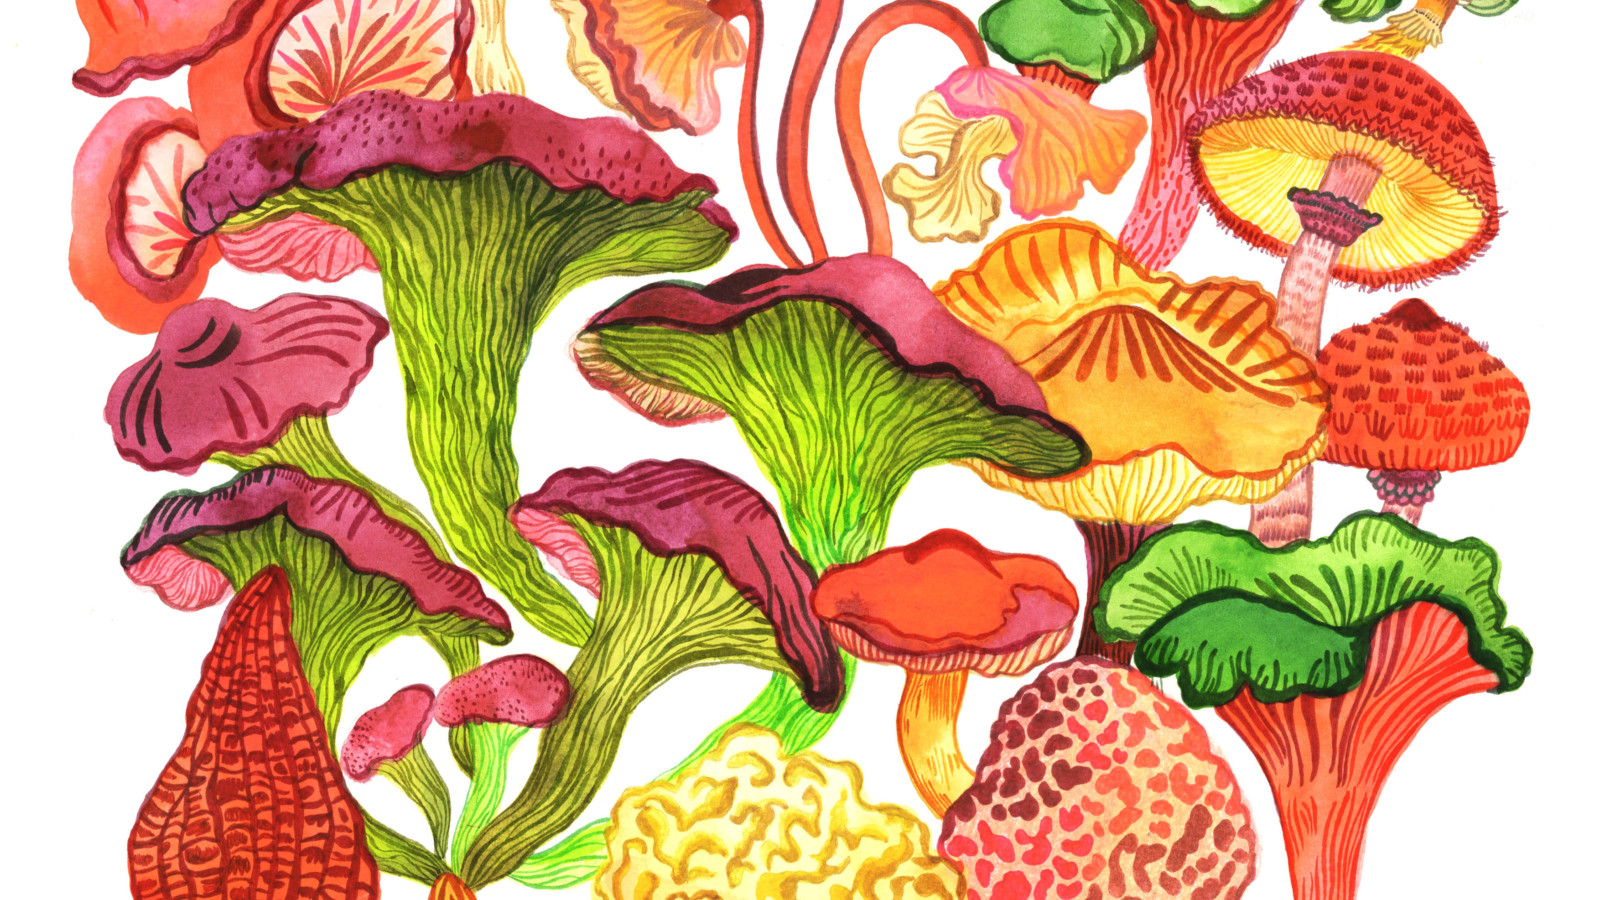 Colourful illustrated mushrooms